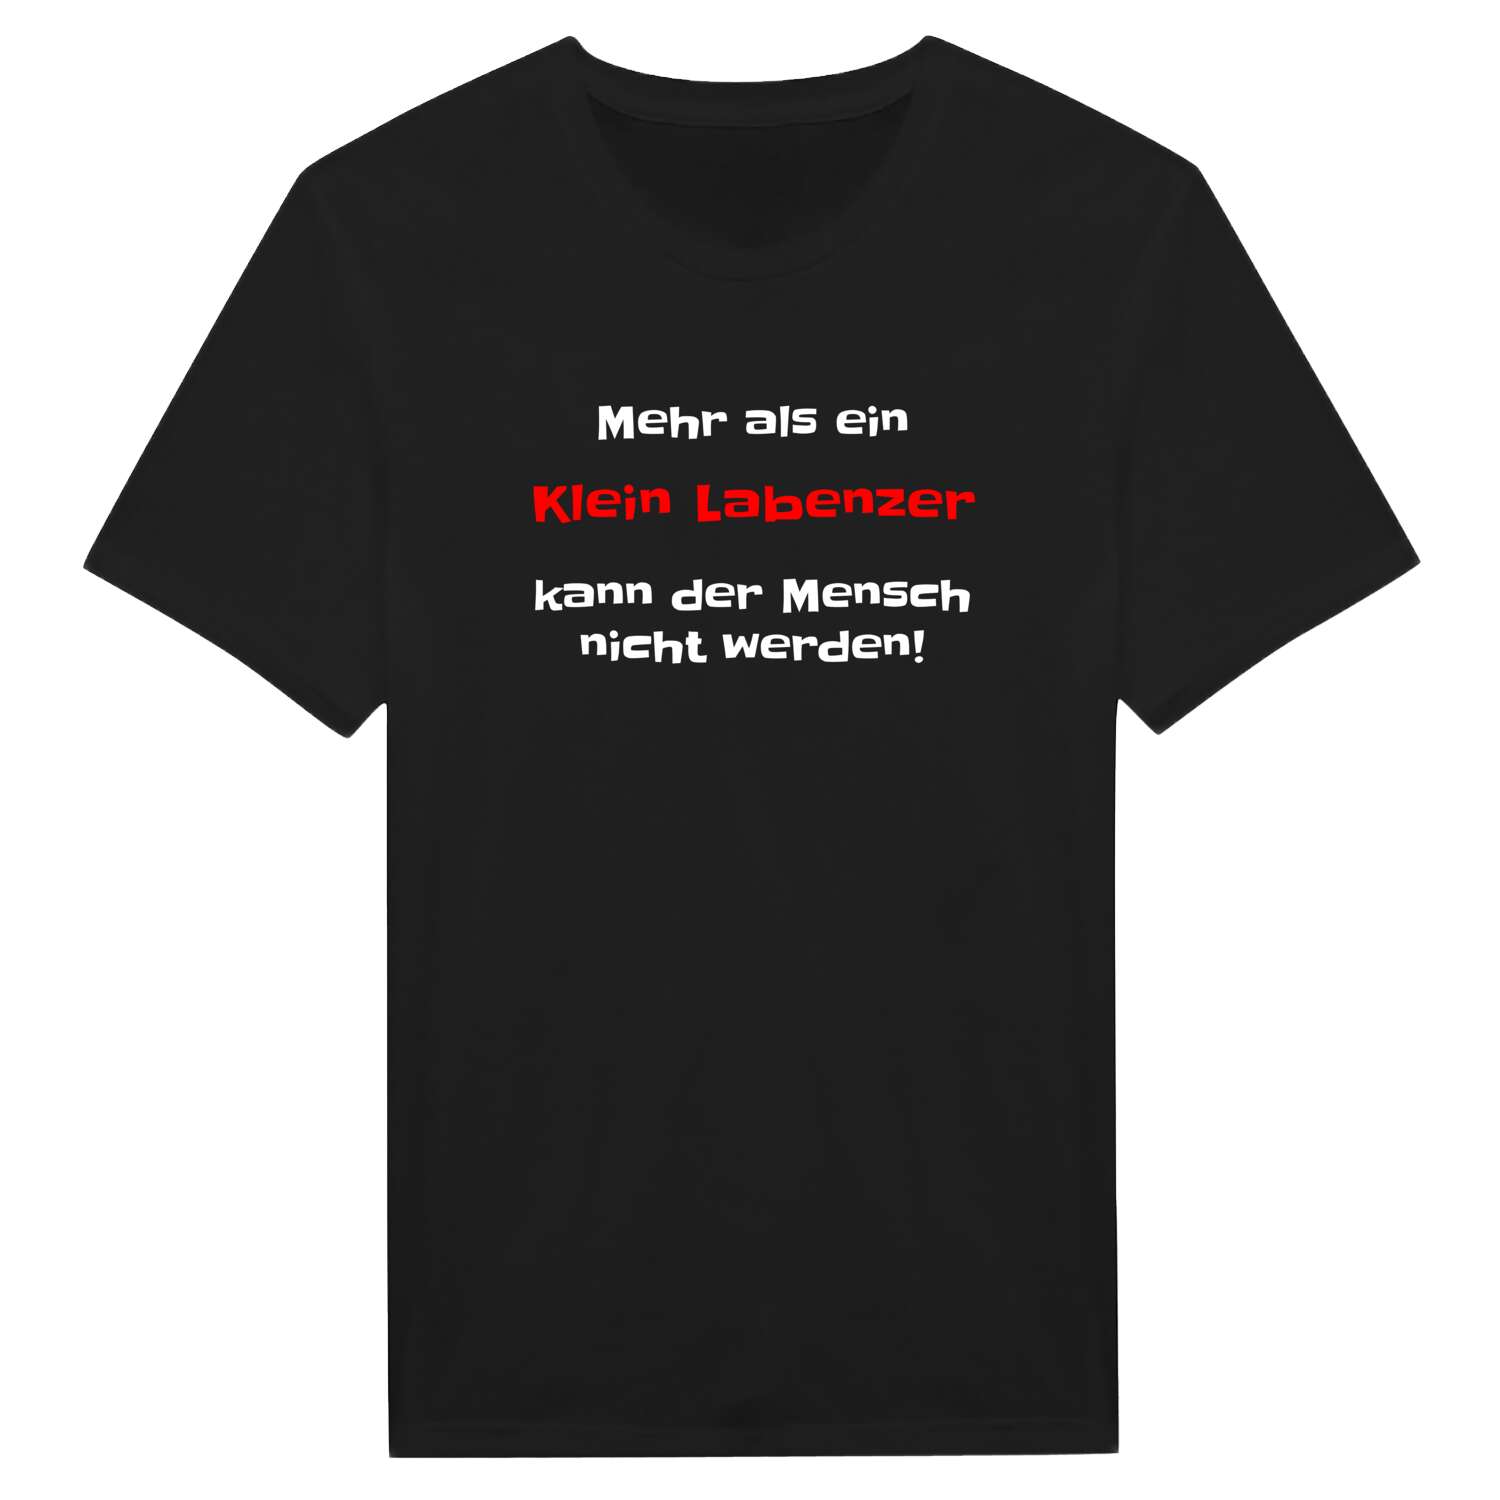 Klein Labenz T-Shirt »Mehr als ein«